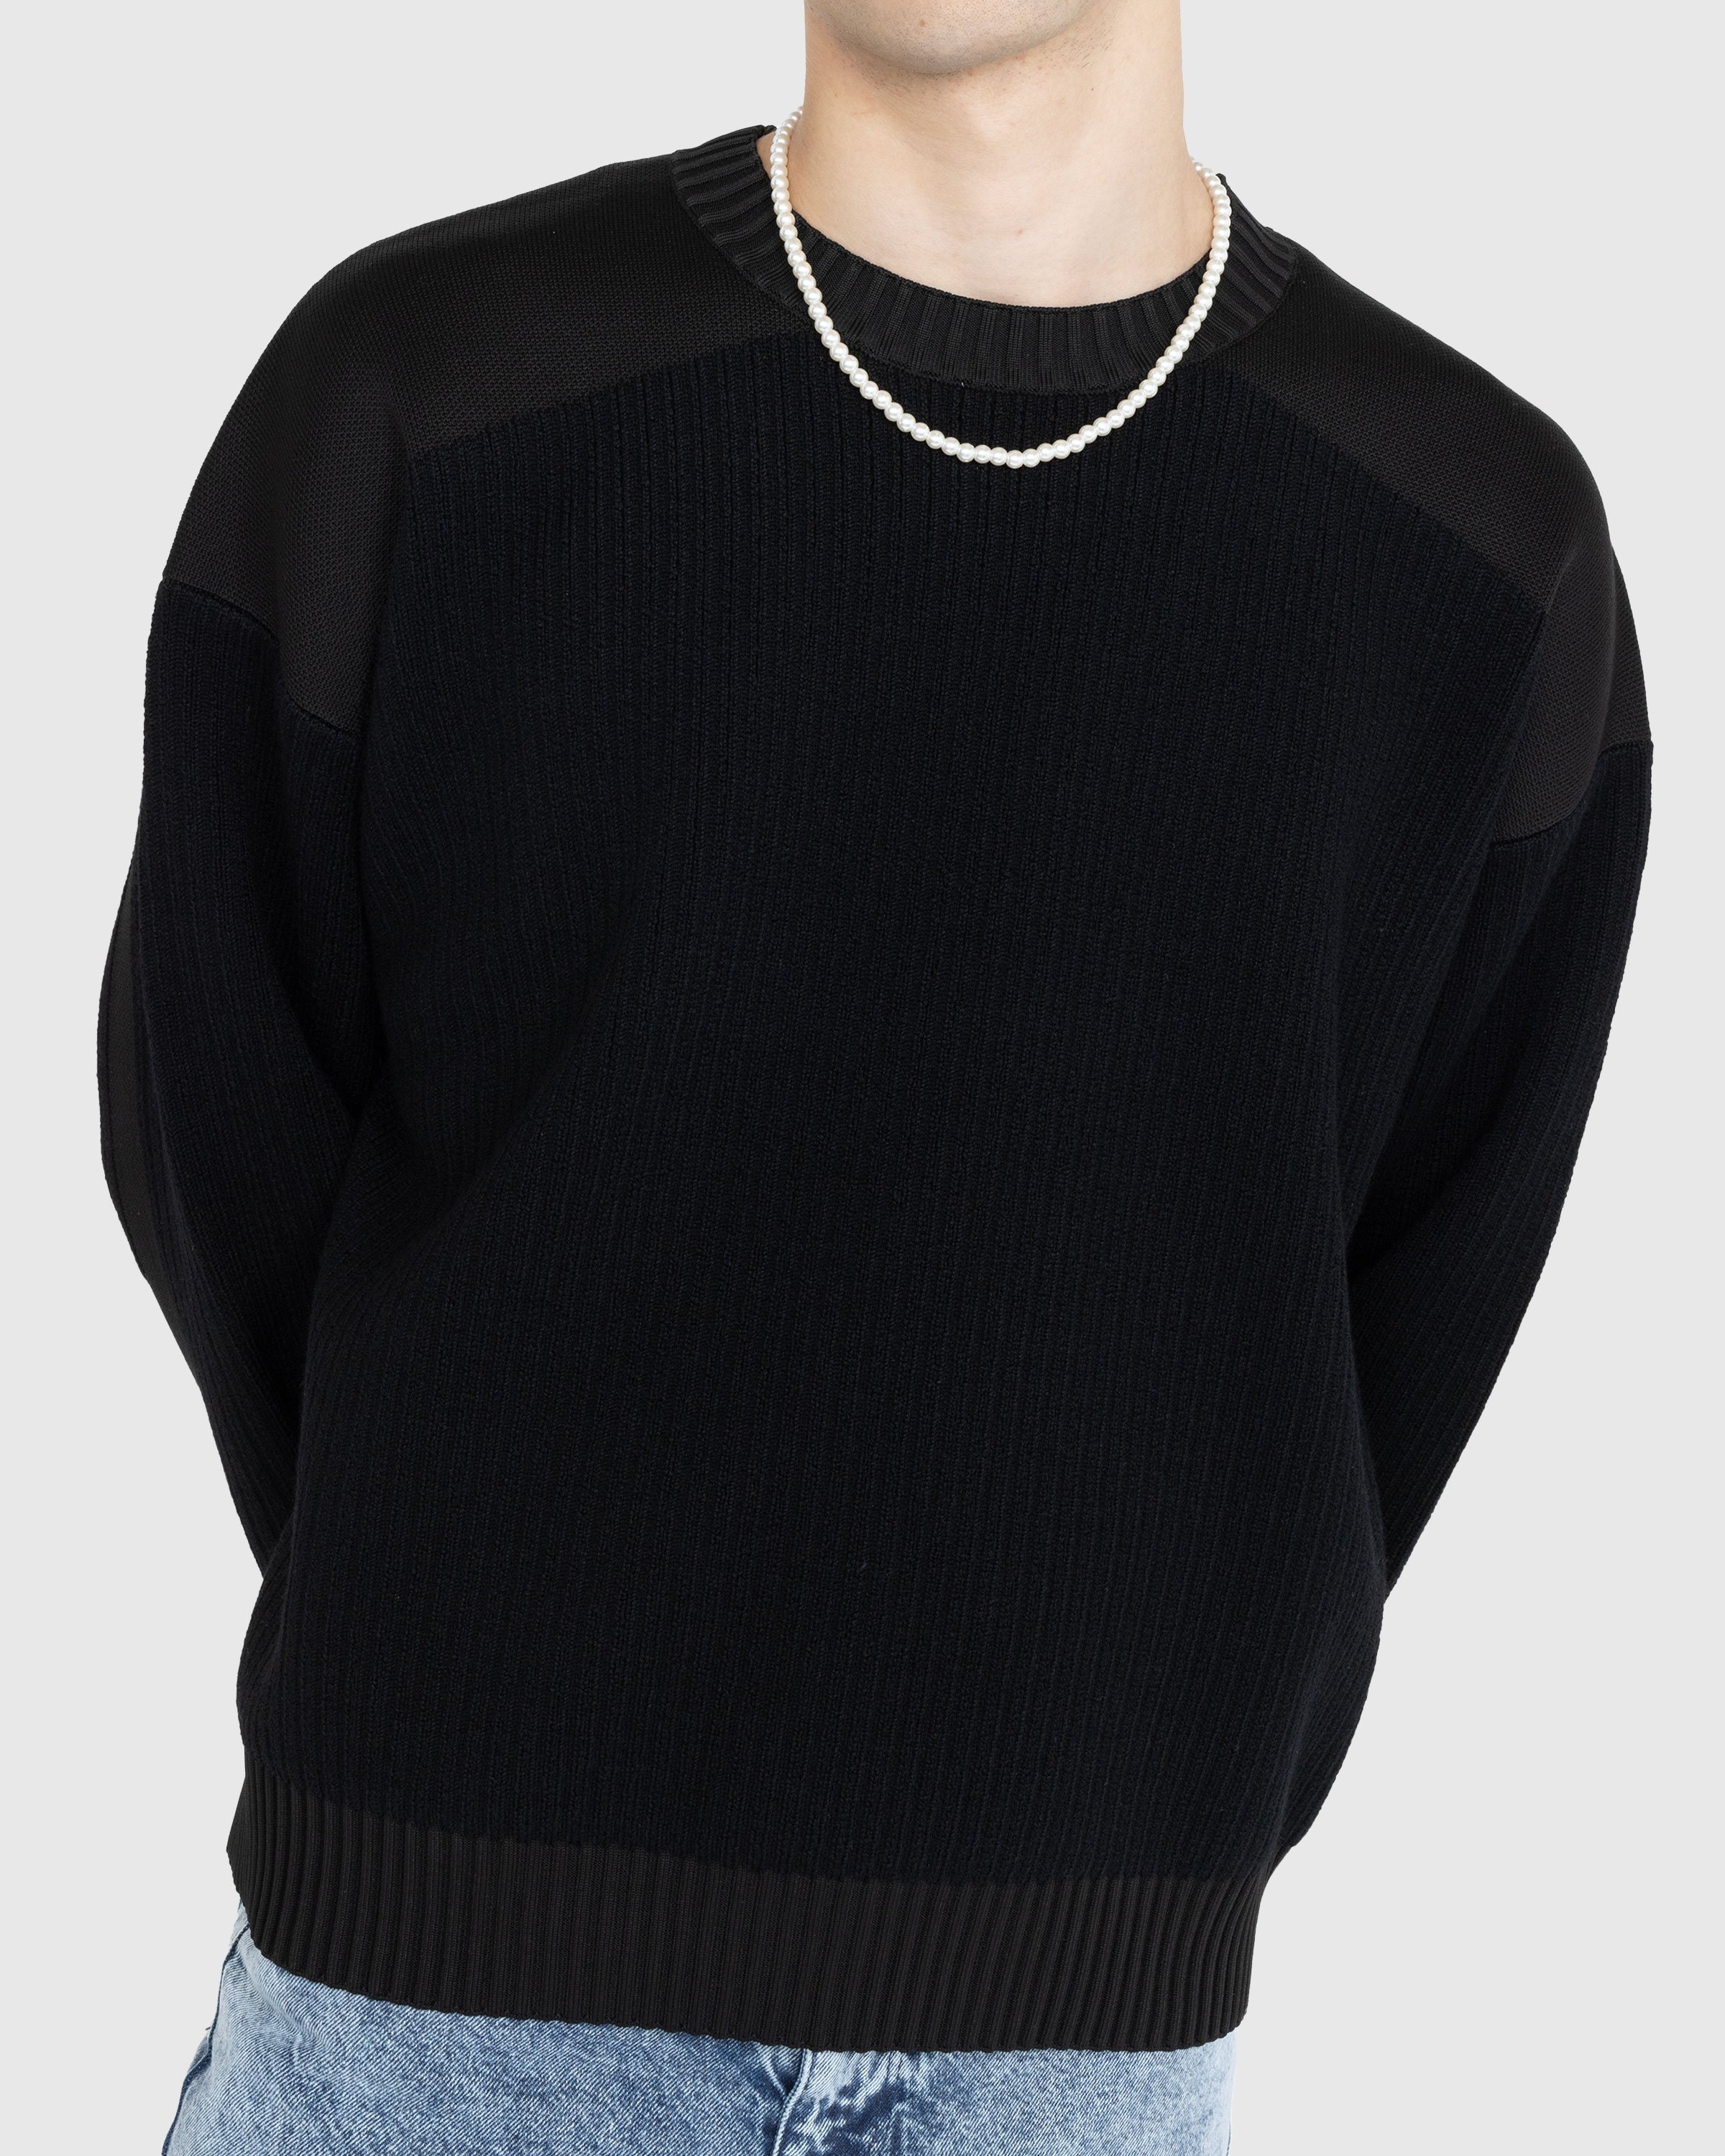 Y-3 - Utility Crewneck Sweater Black - Clothing - Black - Image 3